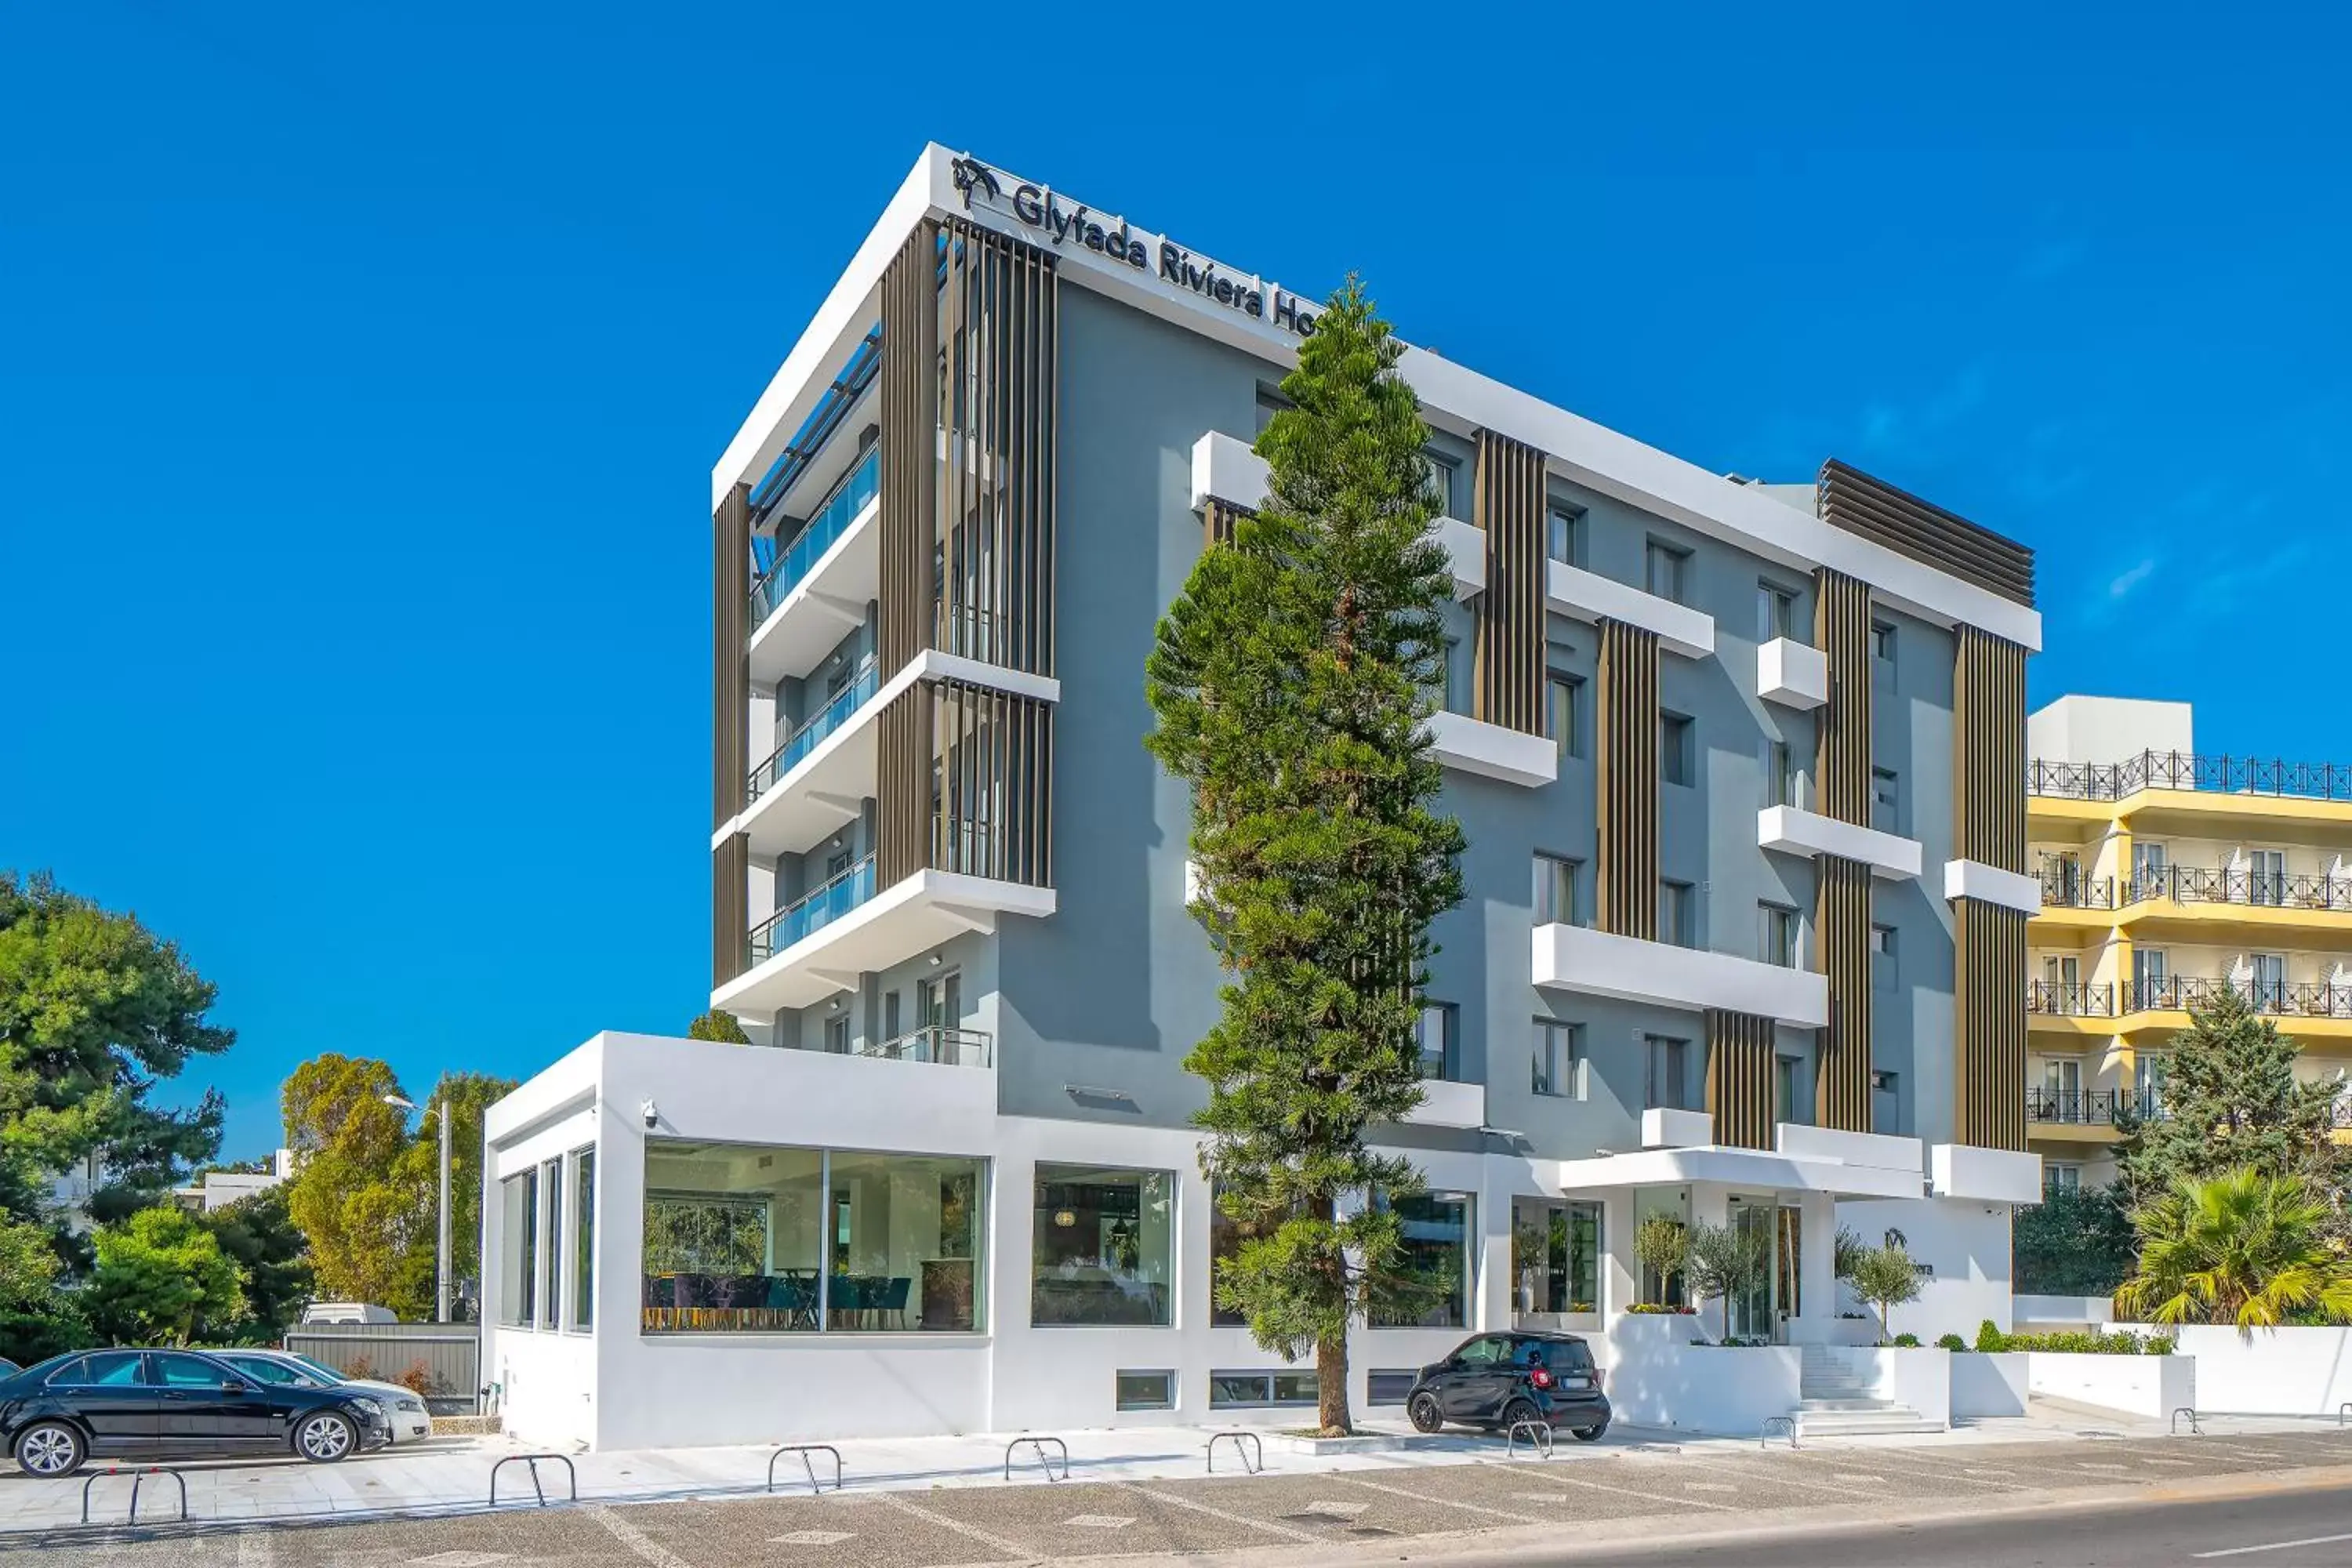 Facade/entrance, Property Building in Glyfada Riviera Hotel